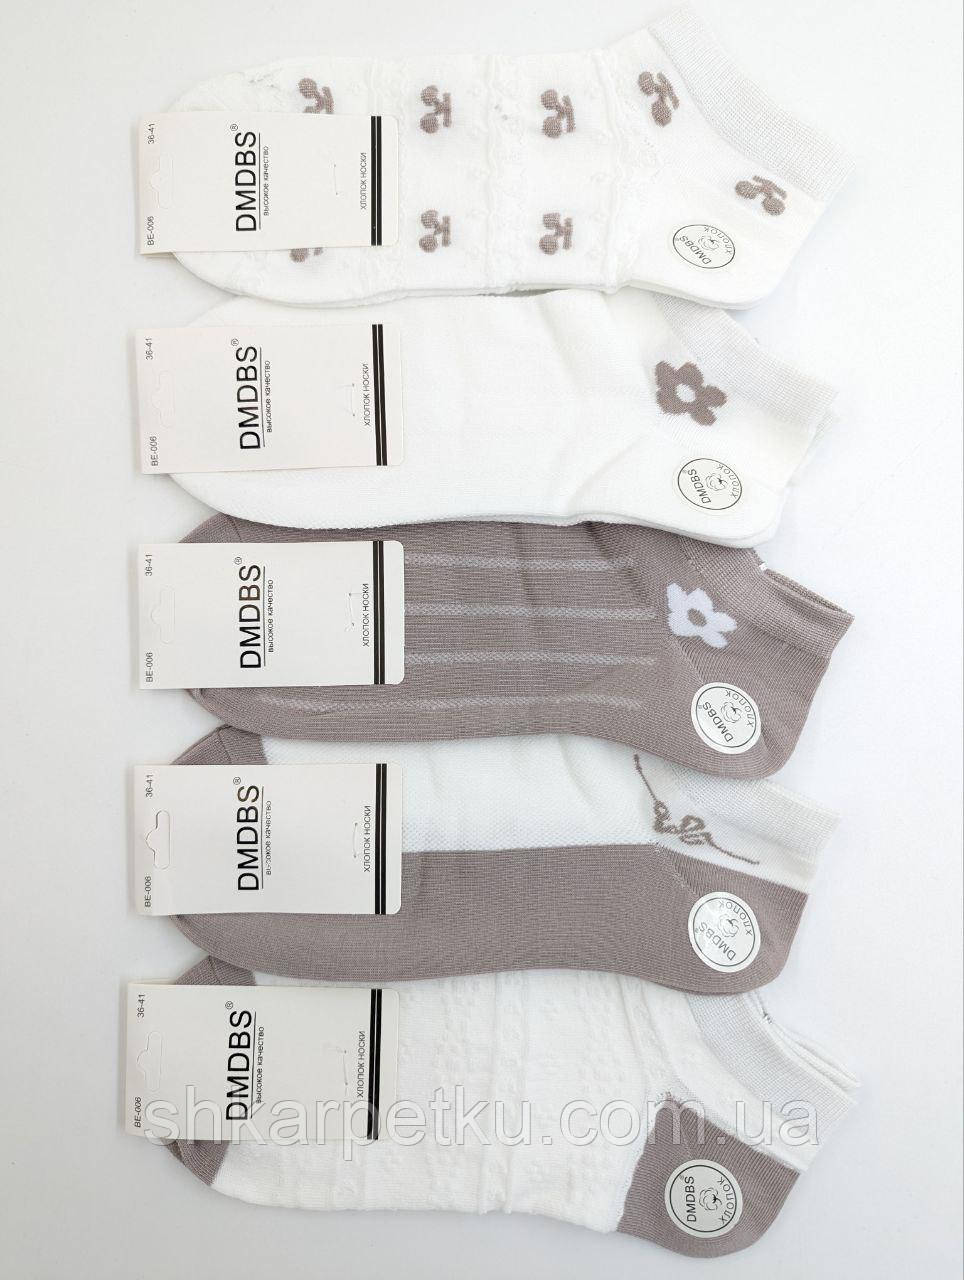 Жіночі короткі шкарпетки DMDBS сітка, літні з квытками, розмір 36-41, 10 пар/уп. асорті